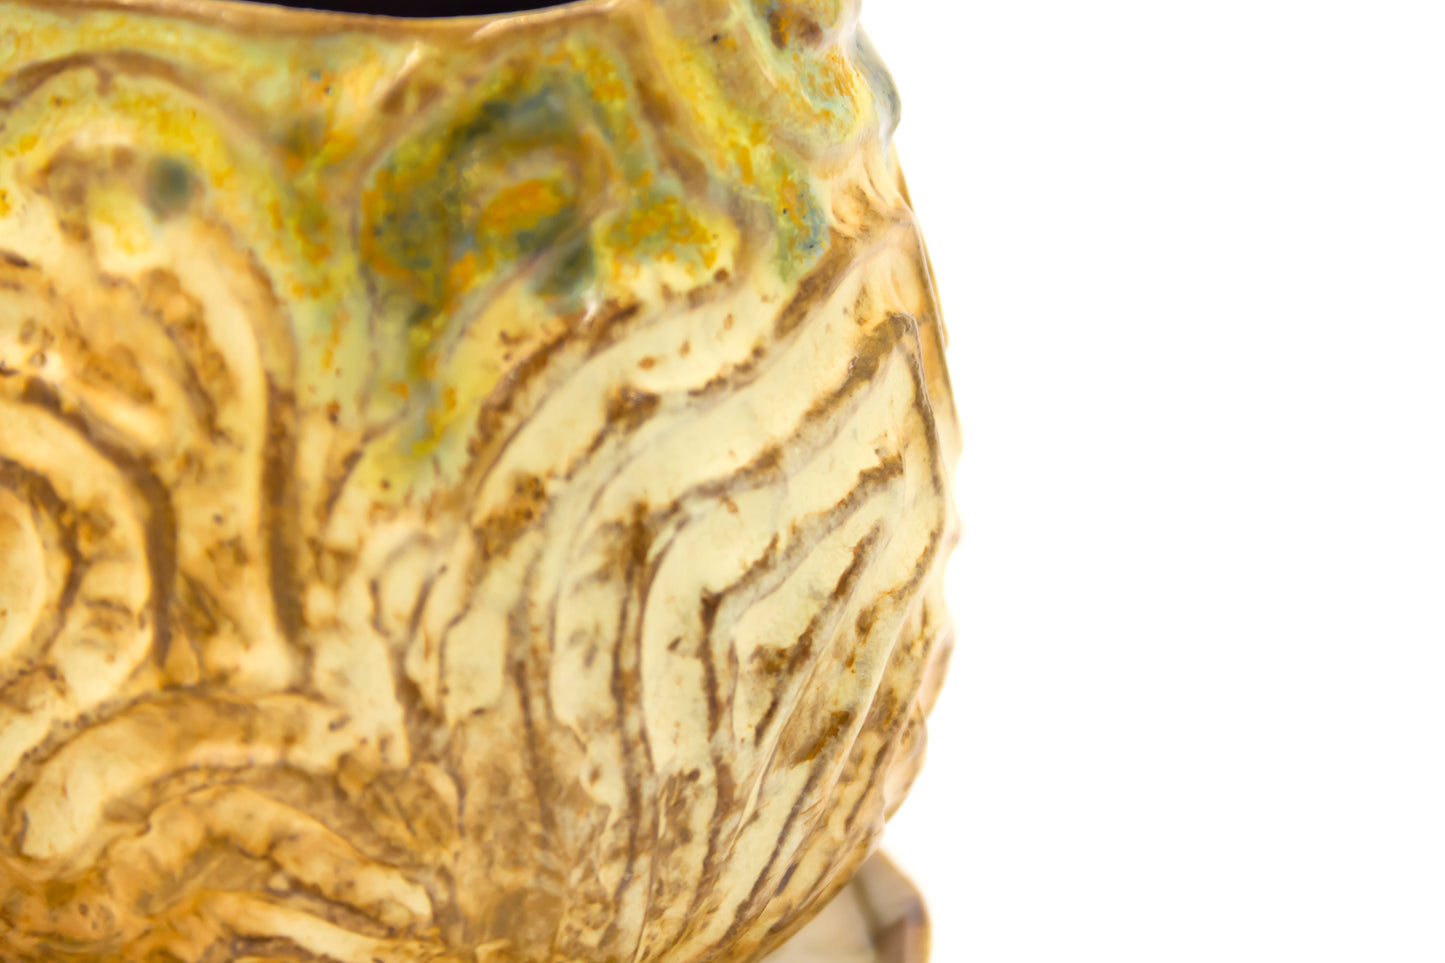 Kubek ceramiczny w kolorze beżowo-szarym ze spodkiem